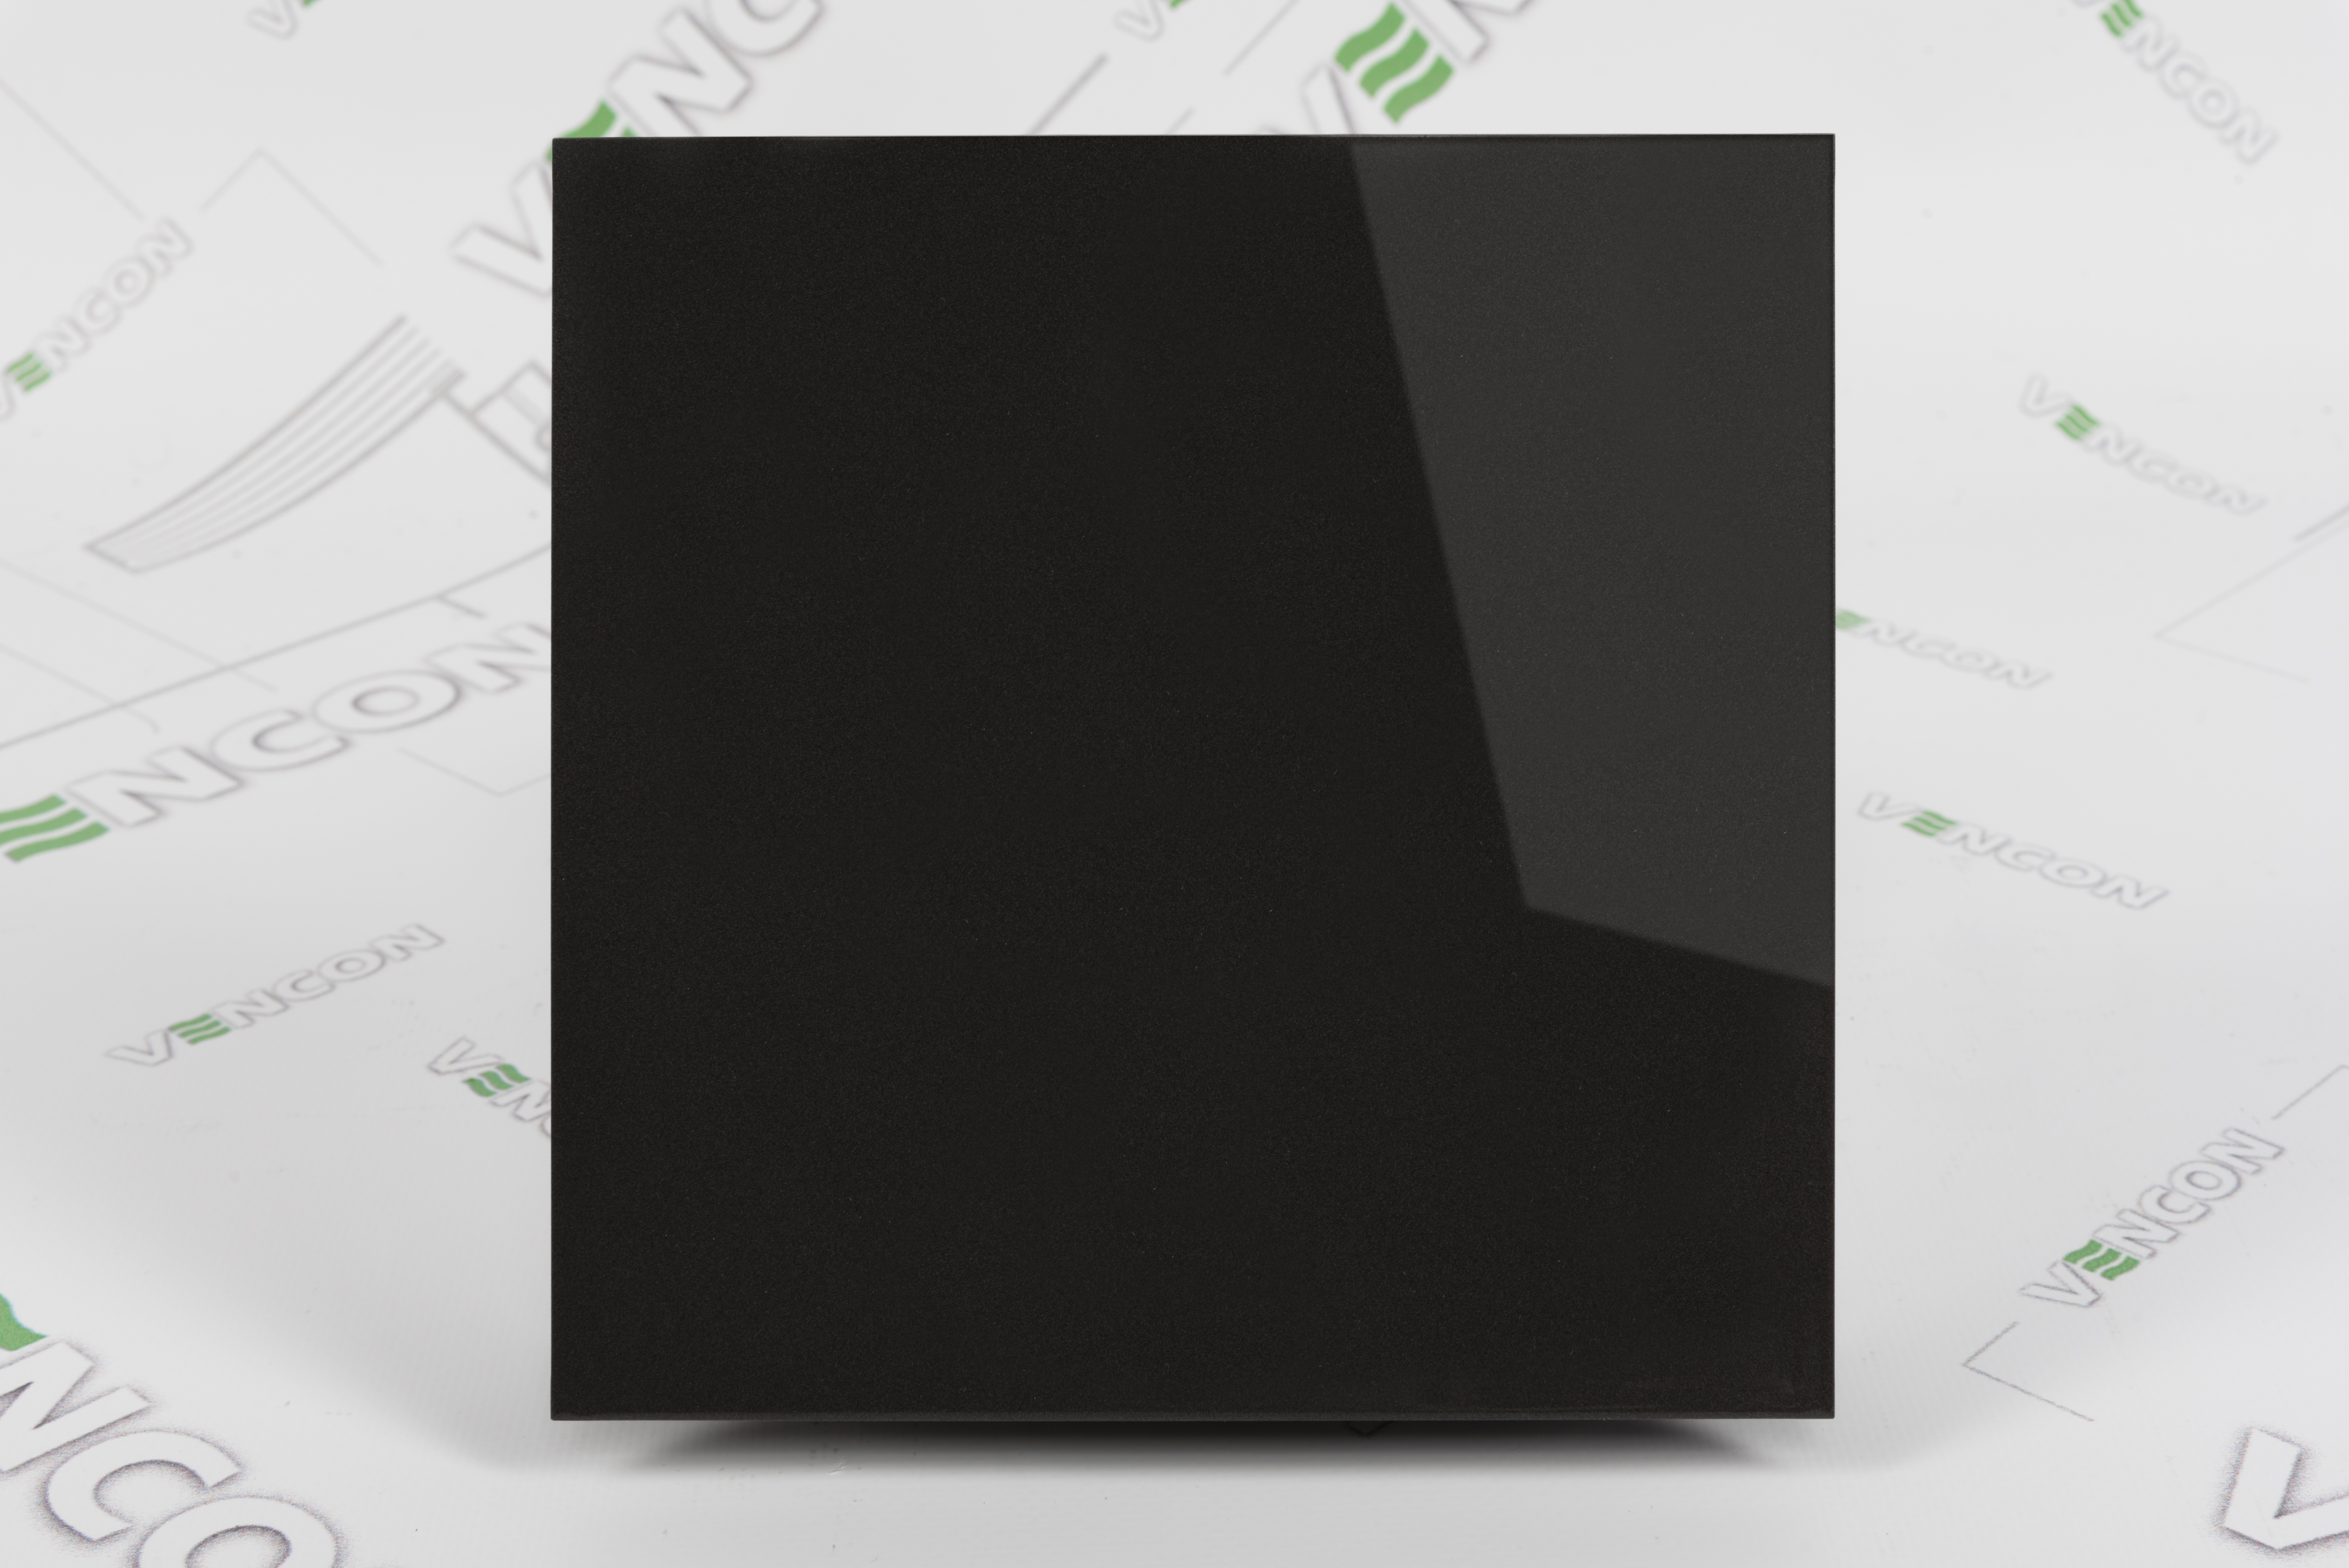 Вытяжной вентилятор Вентс 100 Солид T черный сапфир цена 2720.00 грн - фотография 2